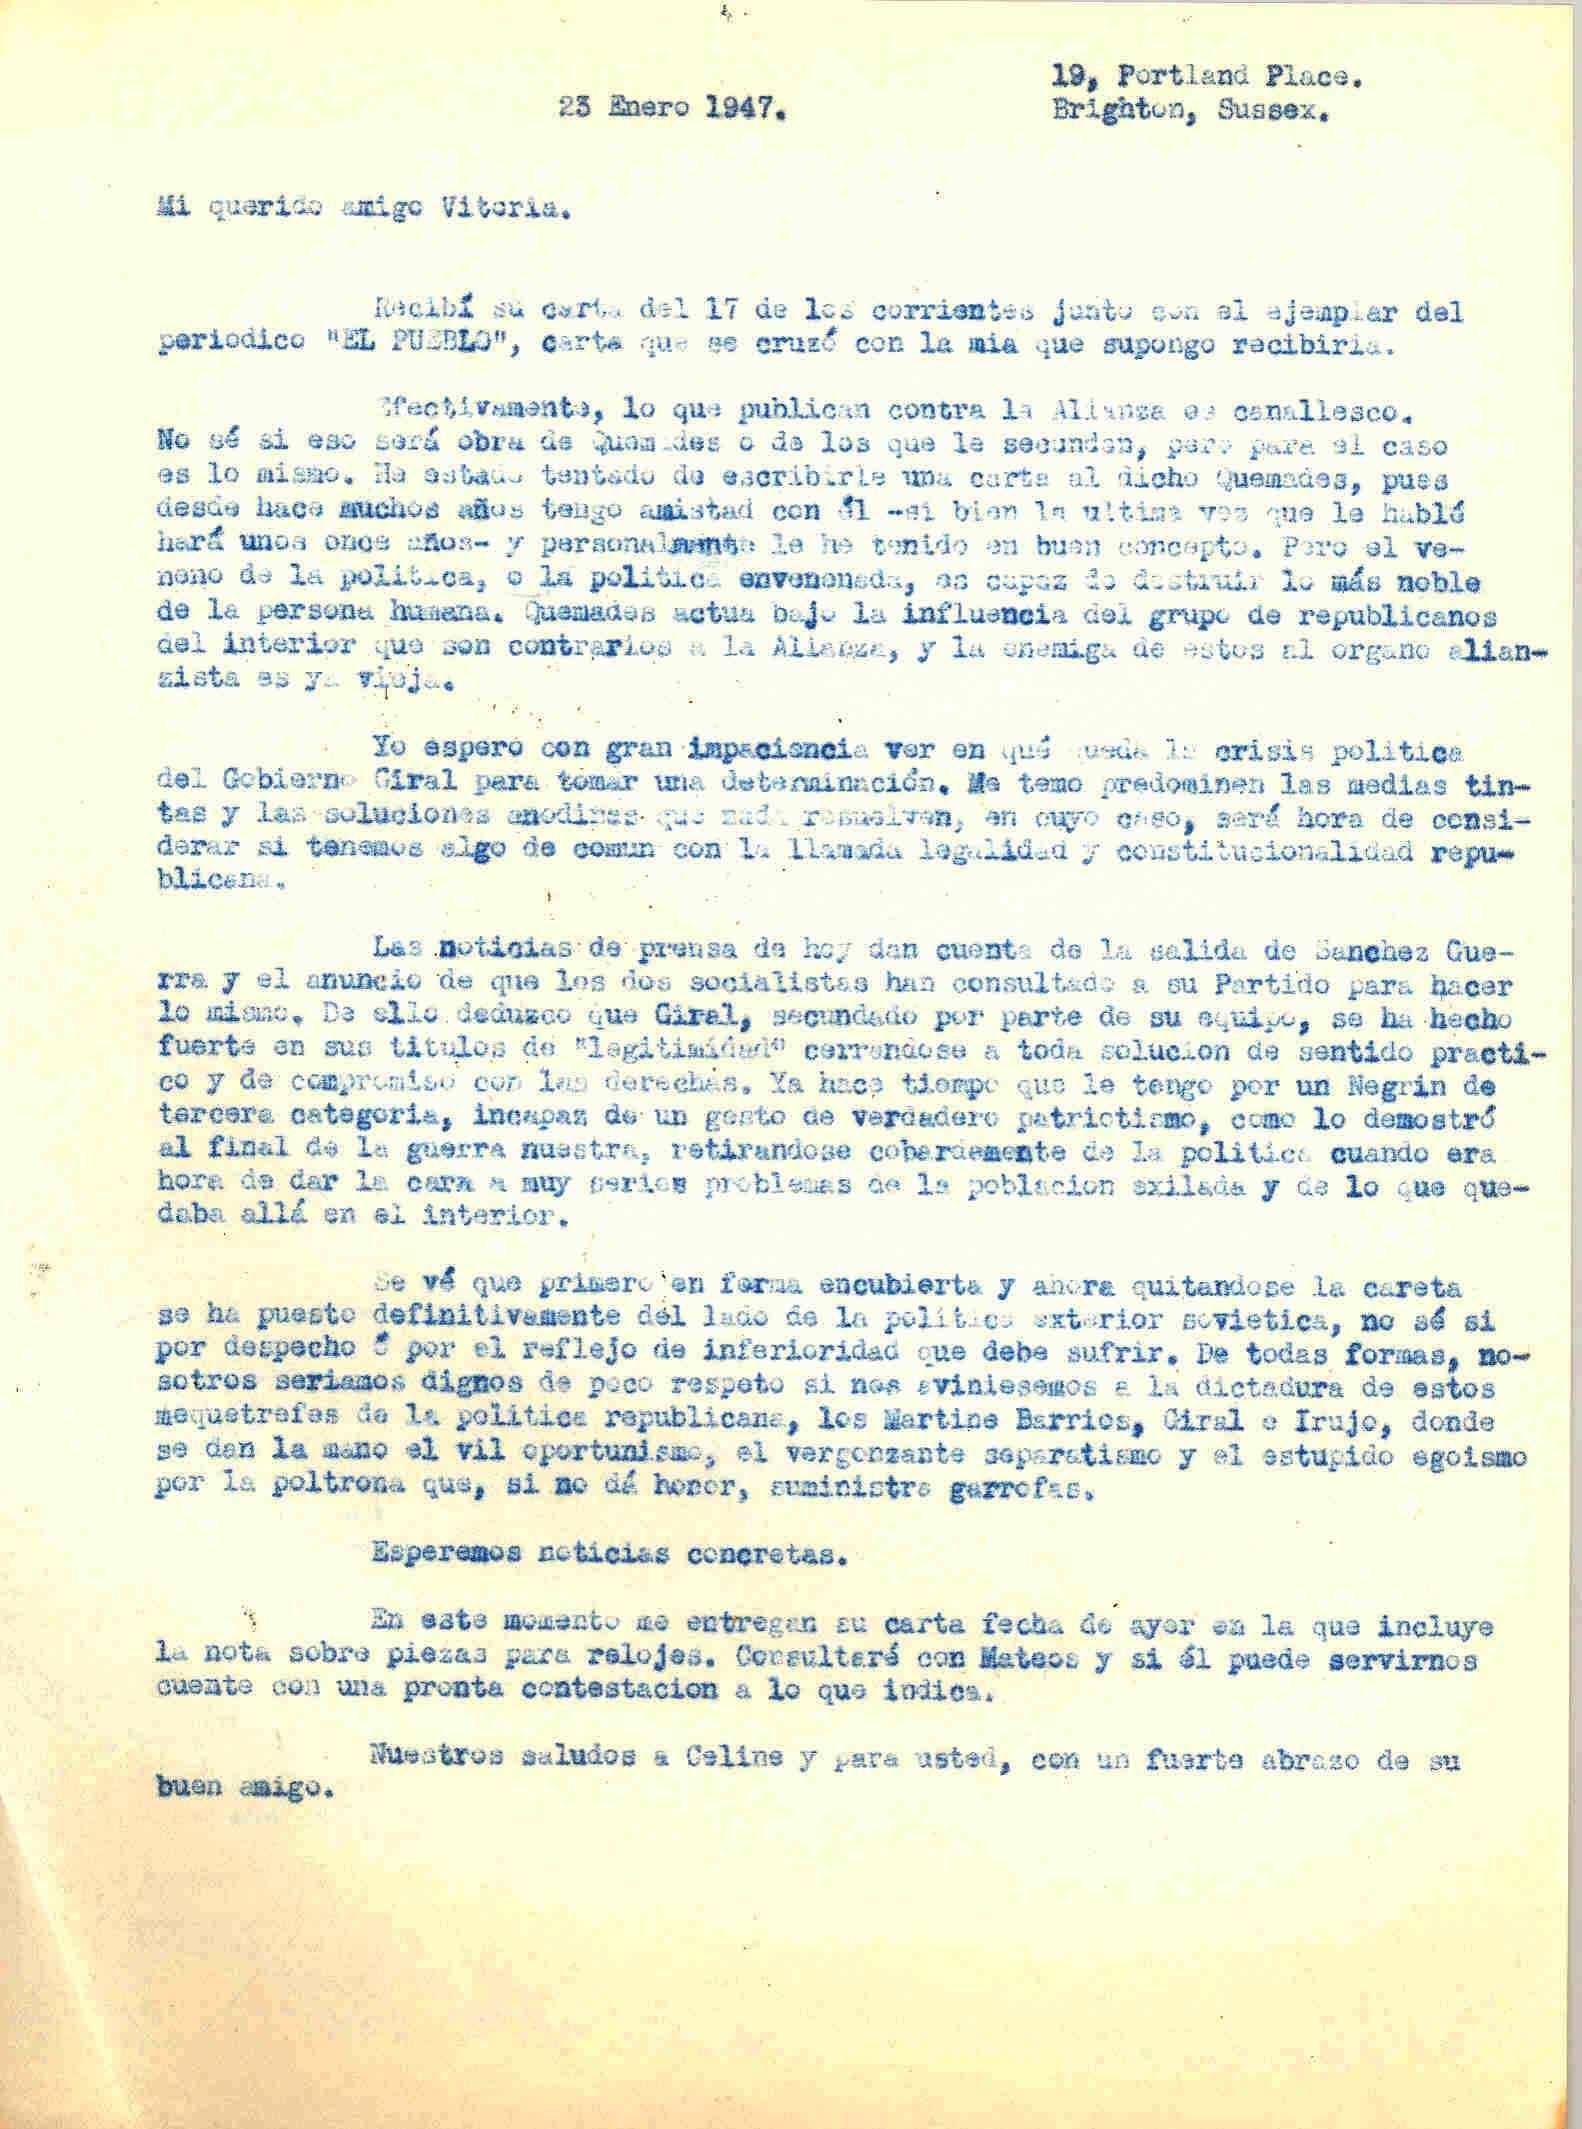 Carta a Roque Victoria en la que habla de la crisis política del gobierno Giral esperando acontecimientos para tomar determinaciones.